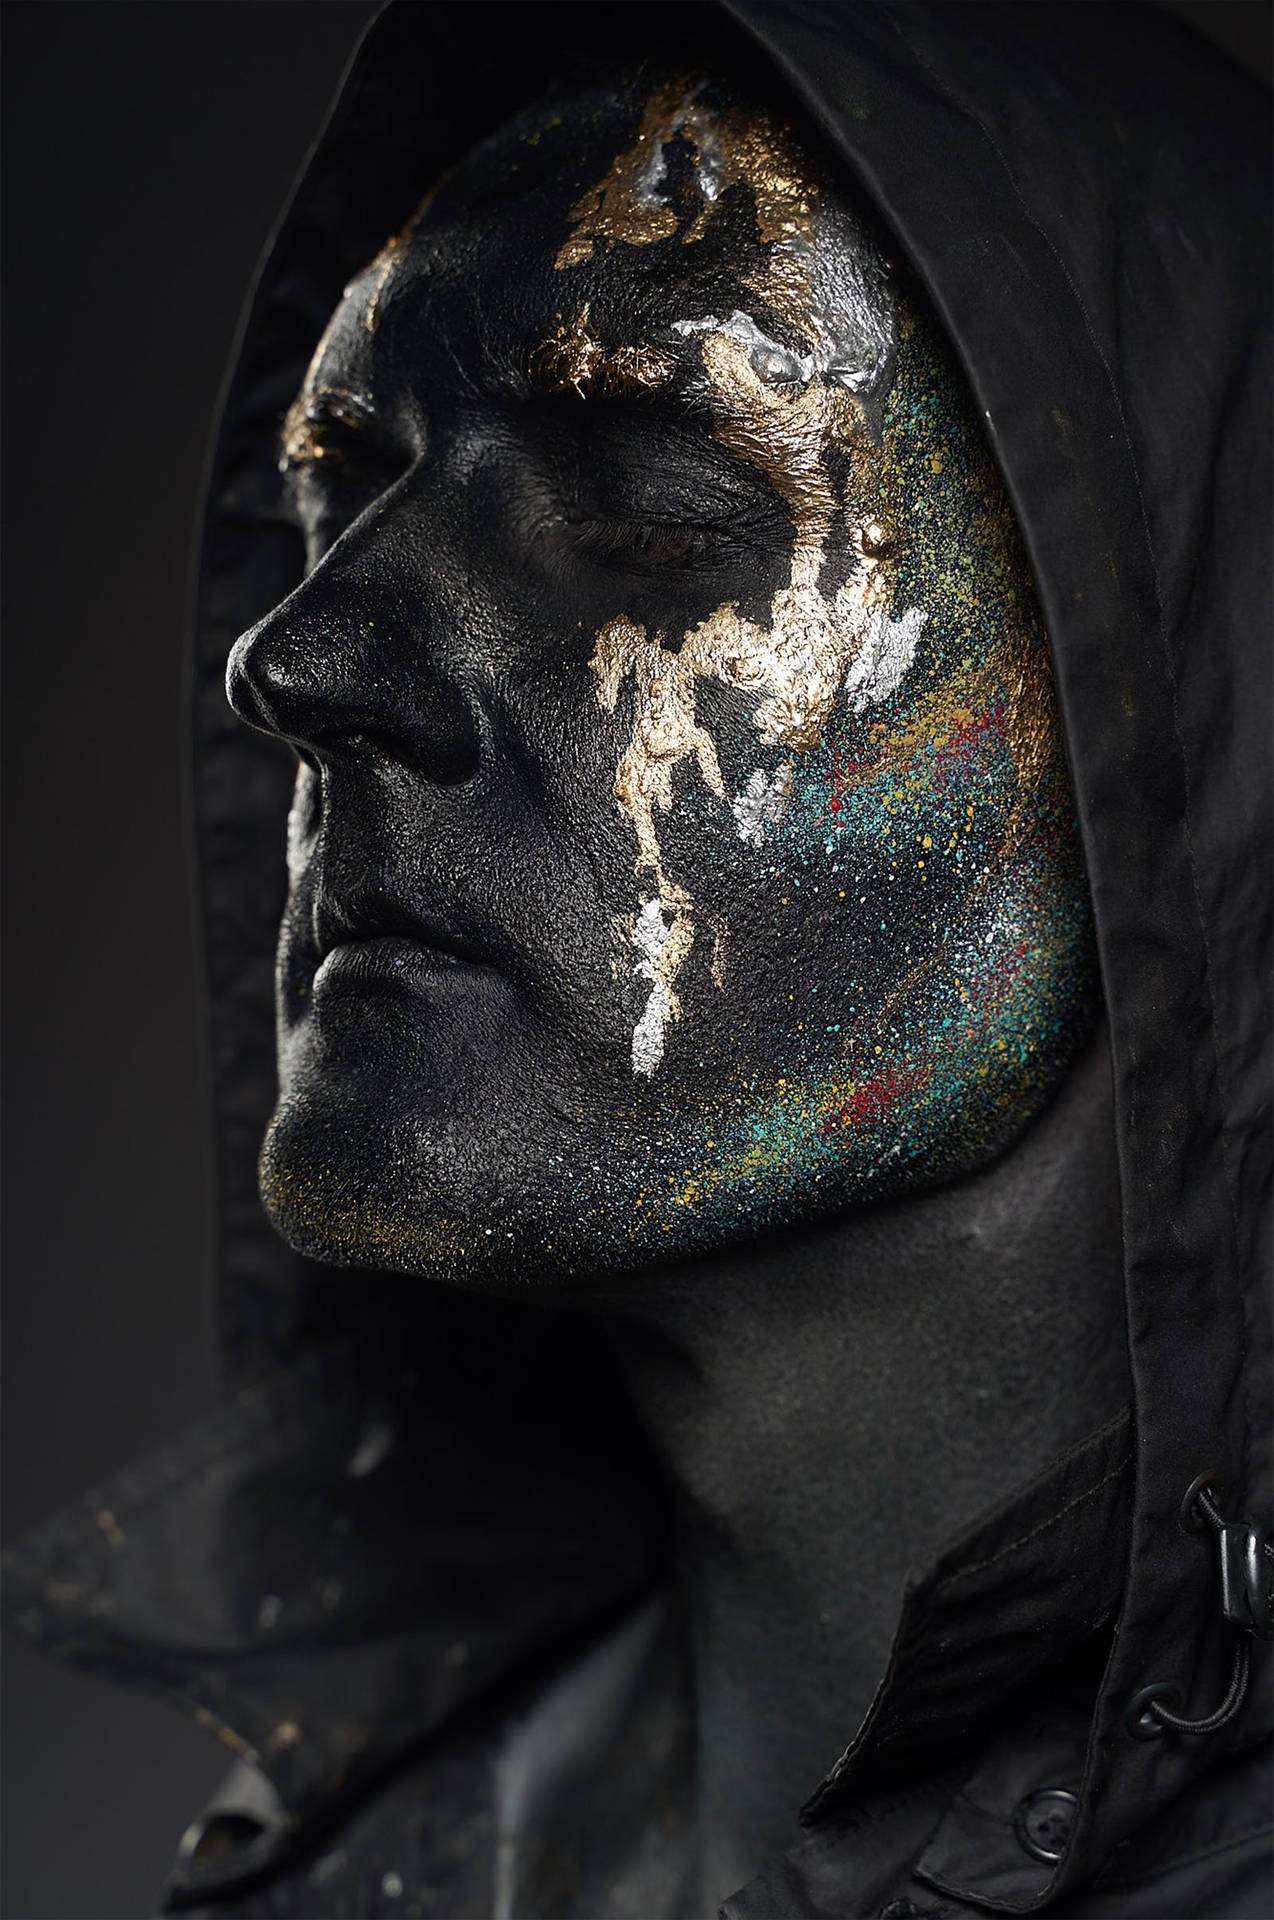 4k Black Glitter Hooded Man Background